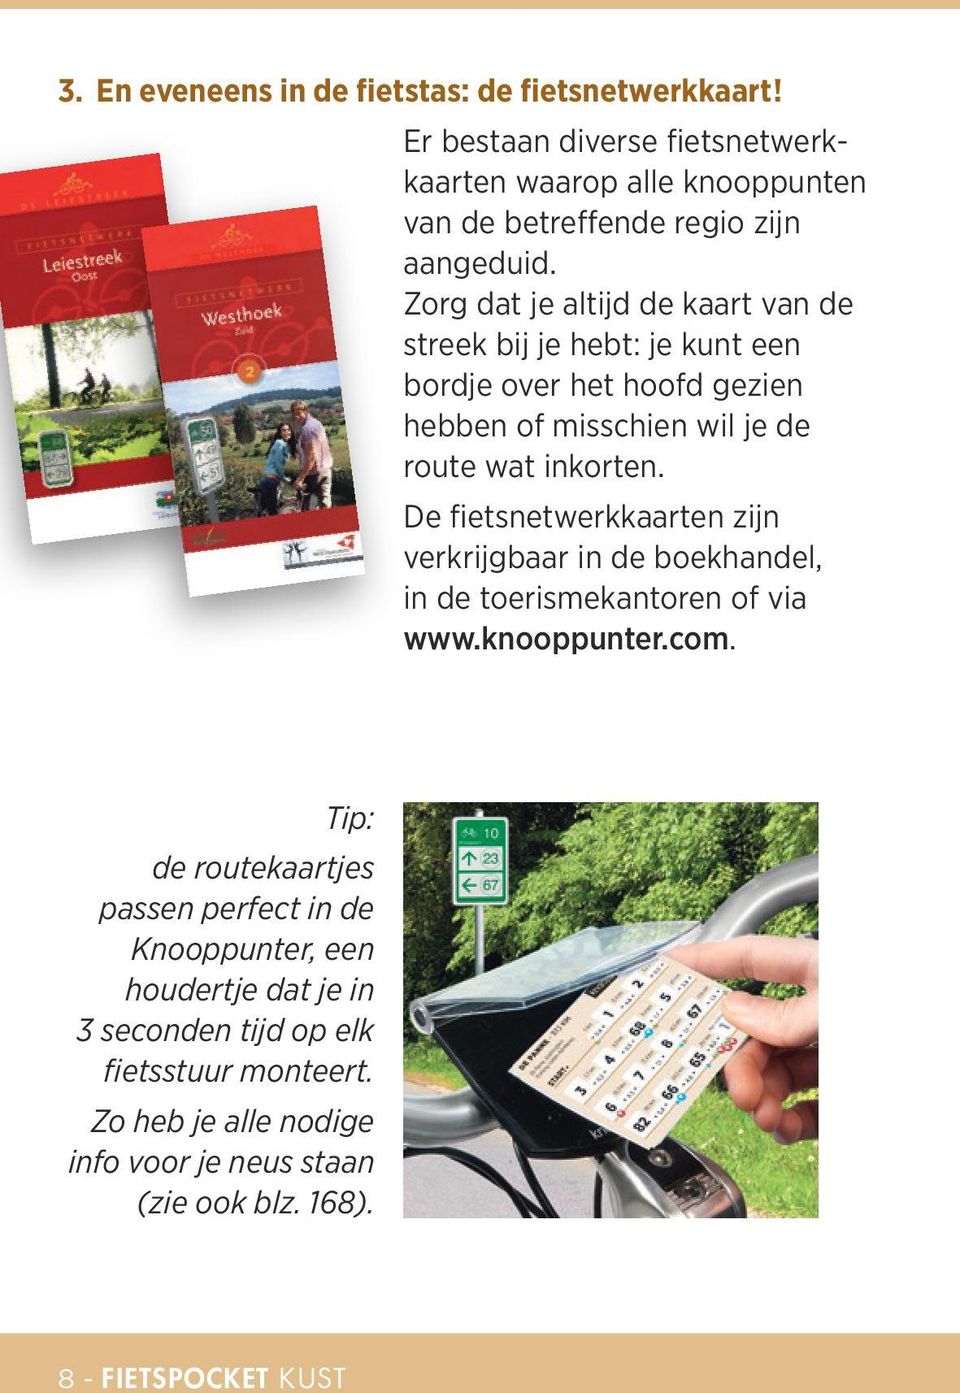 De fietsnetwerkkaarten zijn verkrijgbaar in de boekhandel, in de toerismekantoren of via www.knooppunter.com.